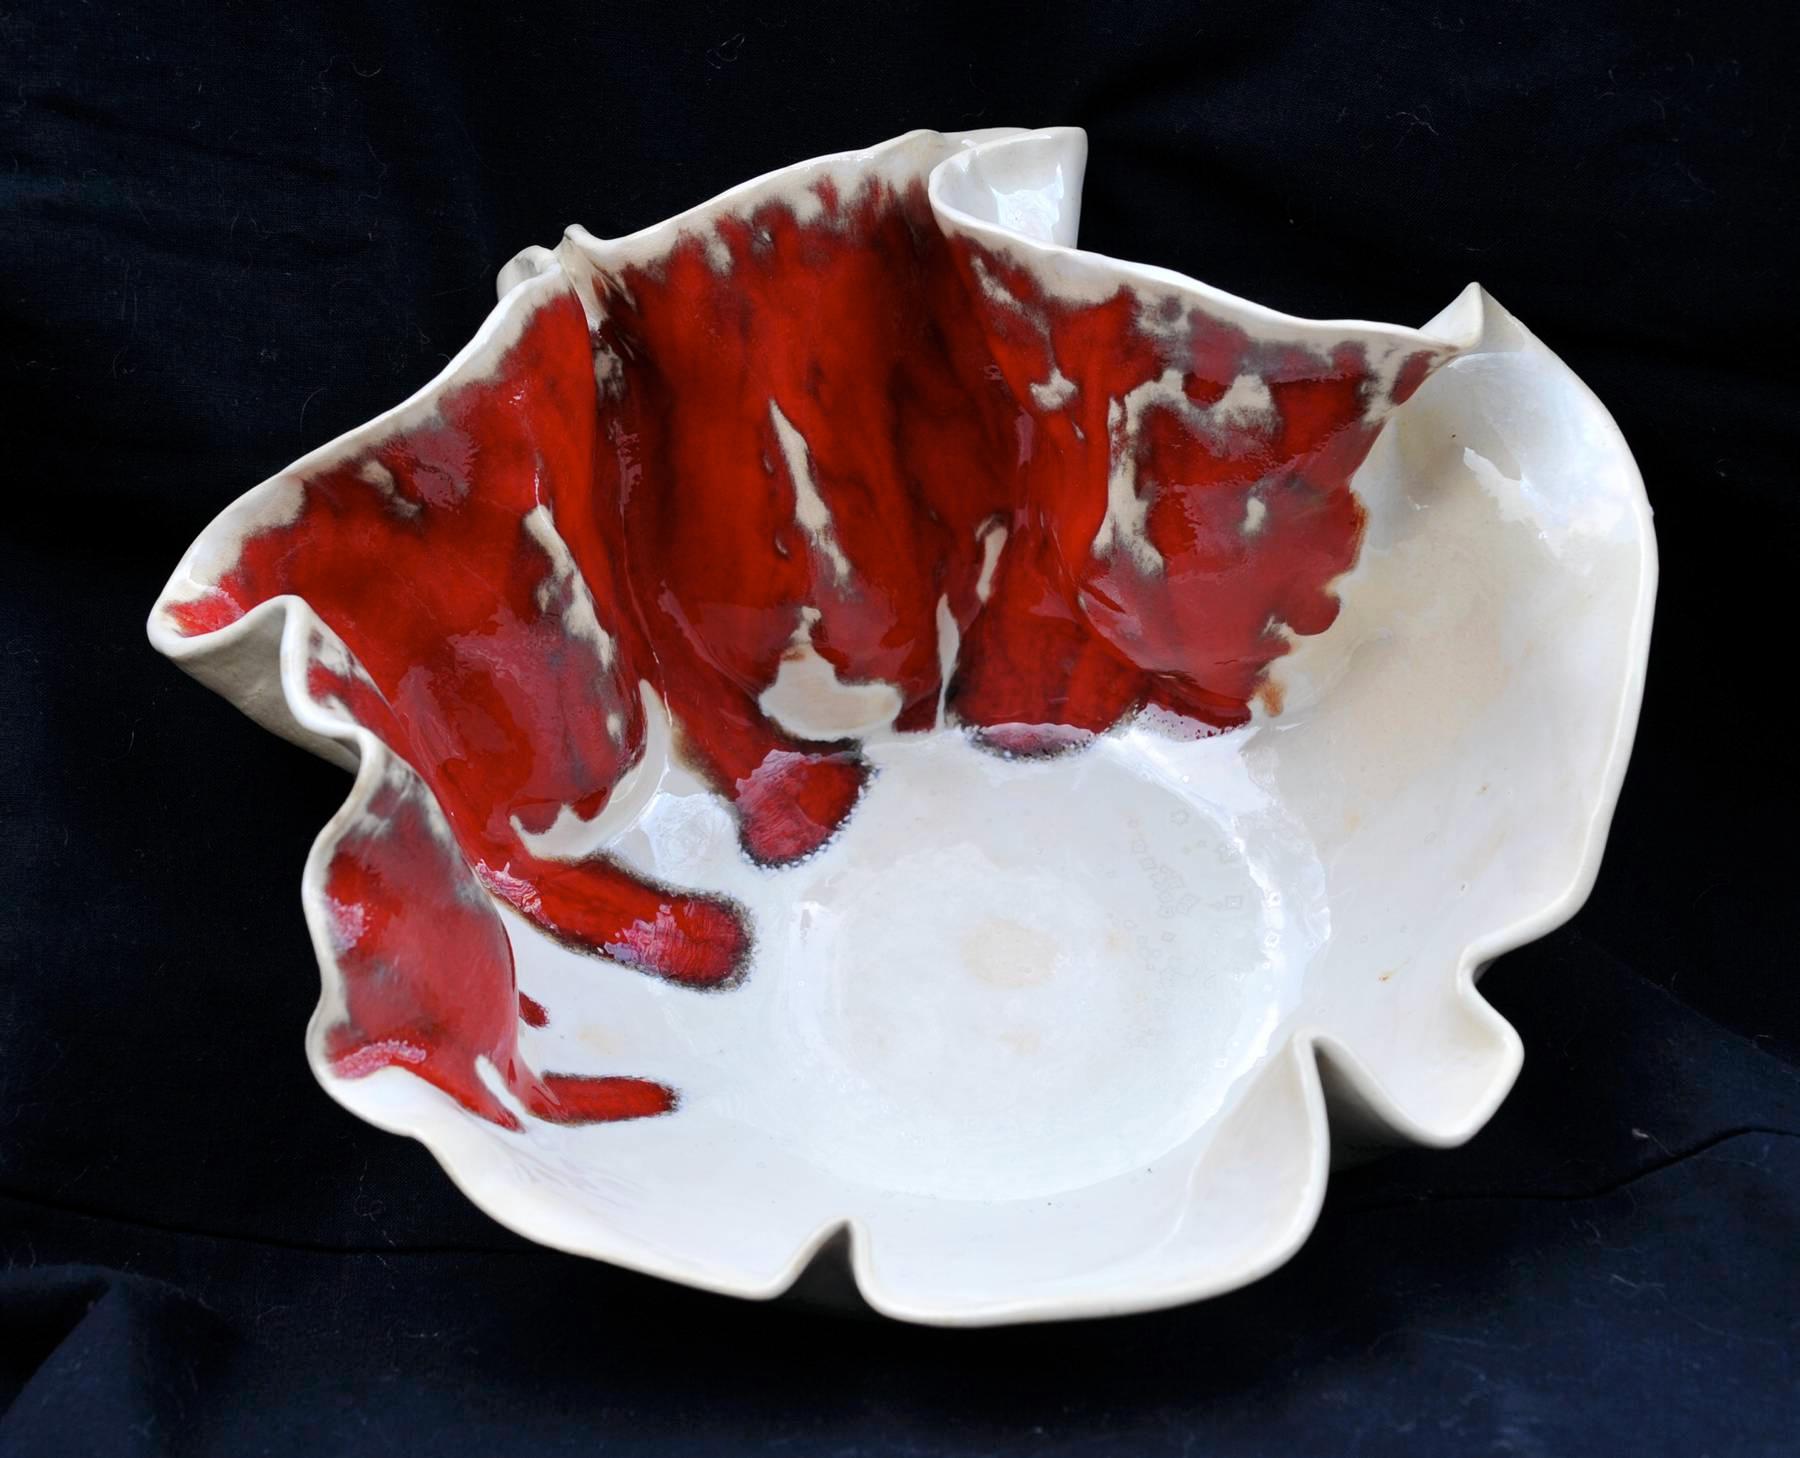 Pracownia ceramiki ceramika artystyczna łódź , Łódź,, łódzkie